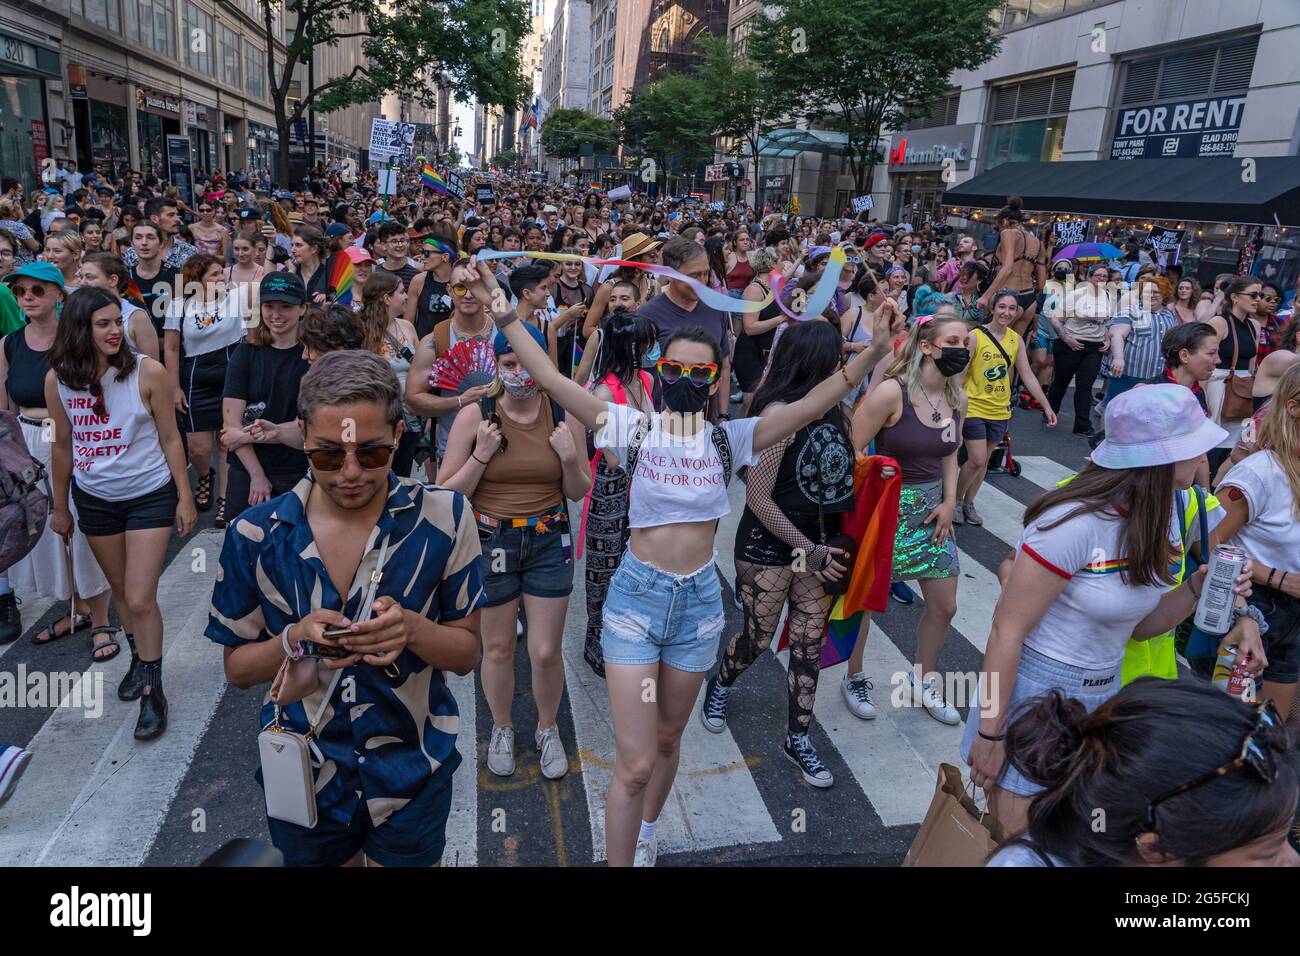 Menschen marschieren auf der Fifth Avenue in New York City Tausende von Menschen marschieren während des 29. Jährlichen New York City Dyke March. Der Dike-Marsch, der sich selbst eher als Marschprotest bezeichnet als als eine Parade, ist laut ihrer Website eine "Demonstration unseres Protestrechts des Ersten Zusatzartikels". Aufgrund der Coronavirus-Pandemie fand der marsch praktisch im Jahr 2020 statt. Der diesjährige märz begann im Bryant Park und endete im Washington Square Park. Stockfoto